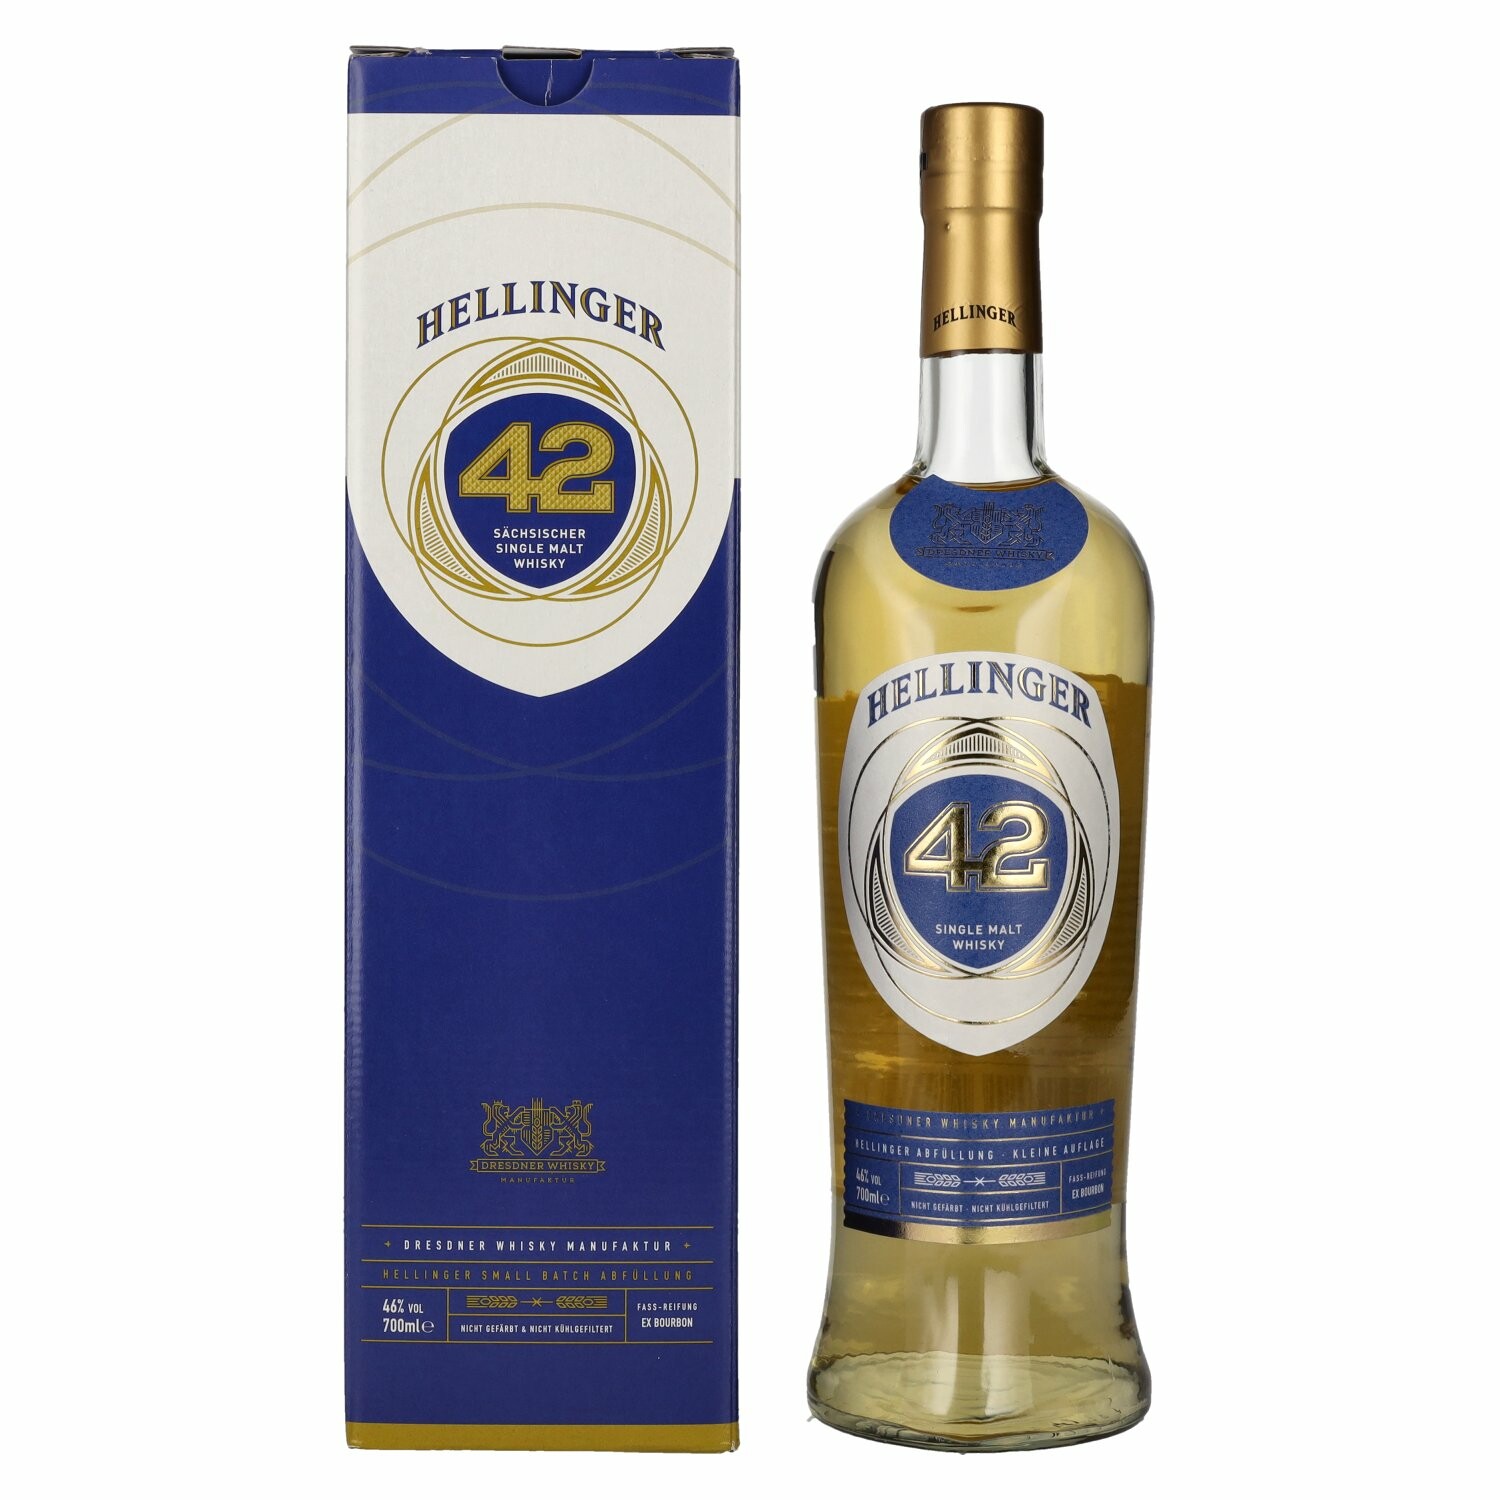 Hellinger 42 Sächsischer Single Malt Whisky 46% Vol. 0,7l in Giftbox